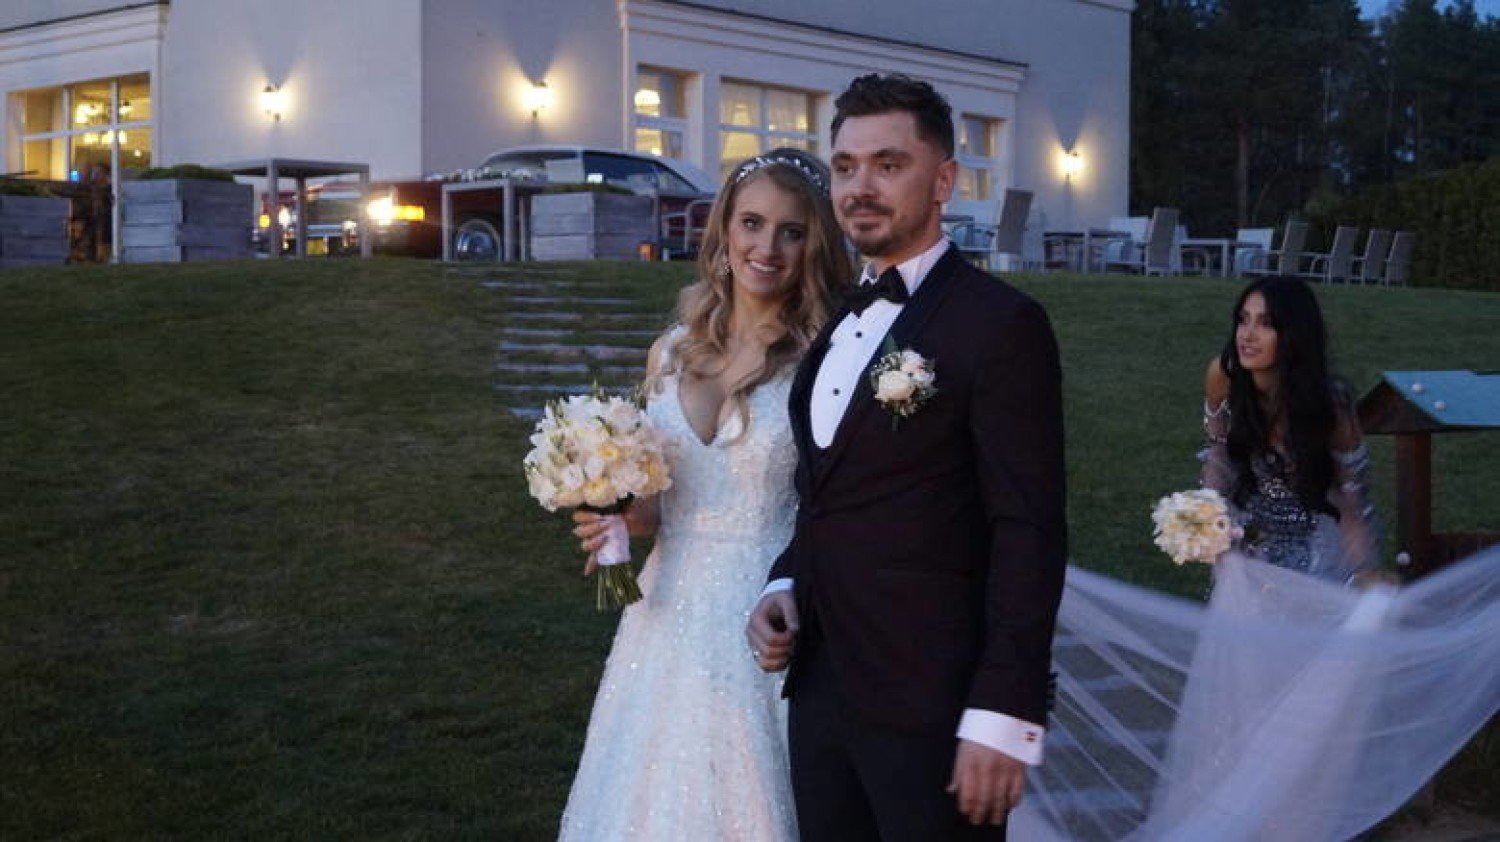 Syn Zenka Martyniuka Daniel Martyniuk wraz z żoną opowiedzą o swoim weselu  w telewizji w TVP | Białystok Nasze Miasto